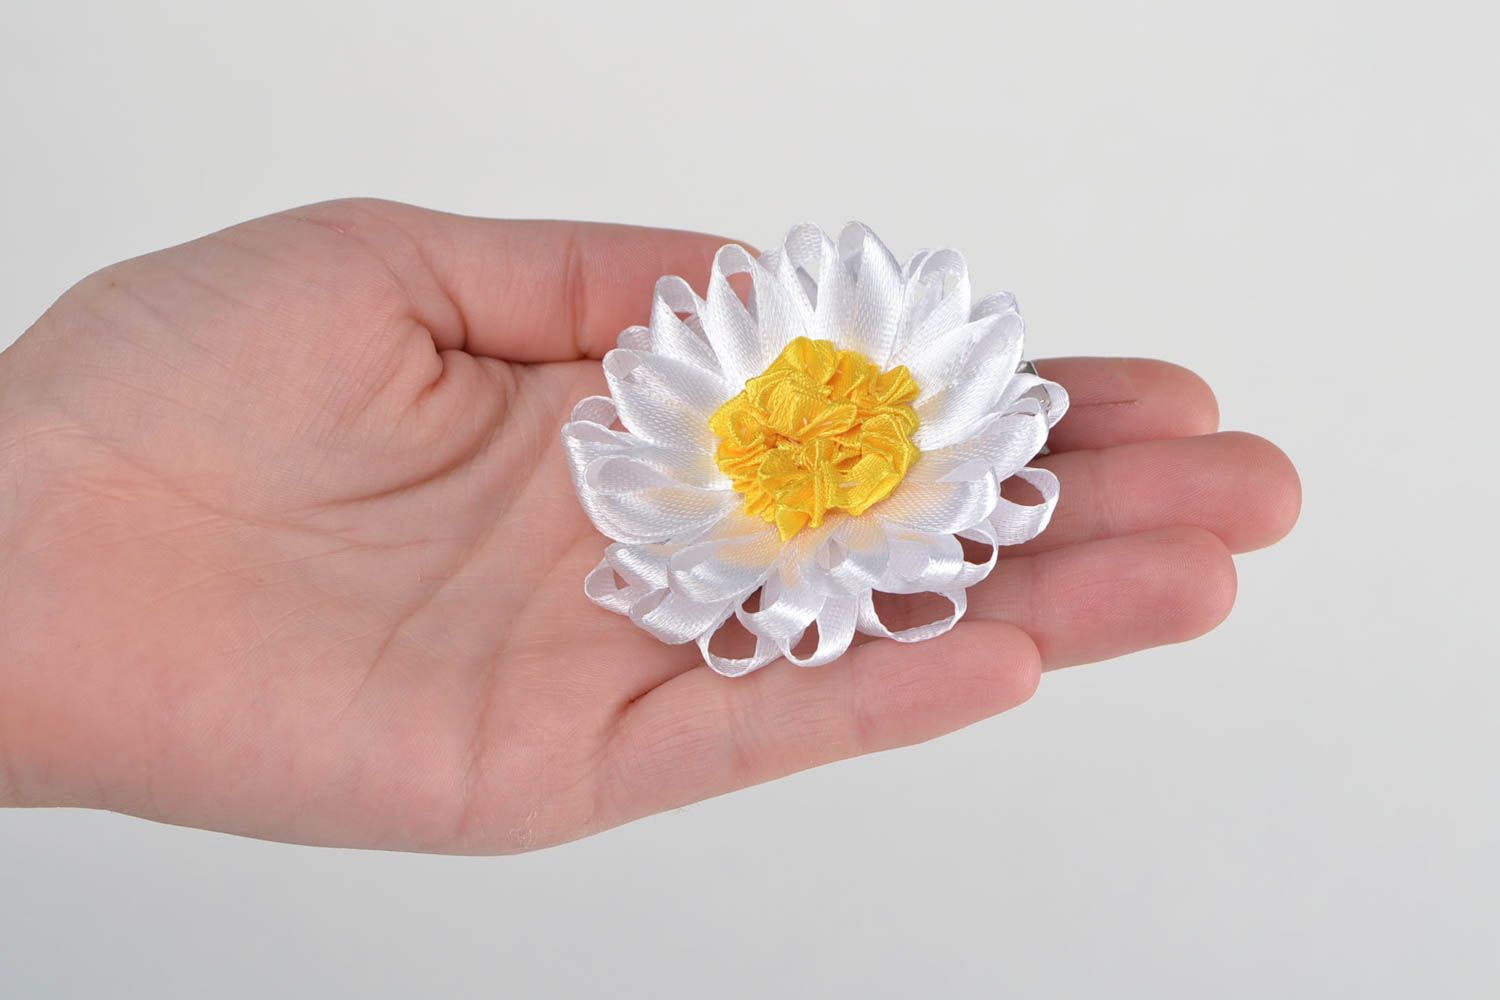 Детская заколка цветок канзаши в виде ромашки белая с желтым средняя хэнд мейд фото 2